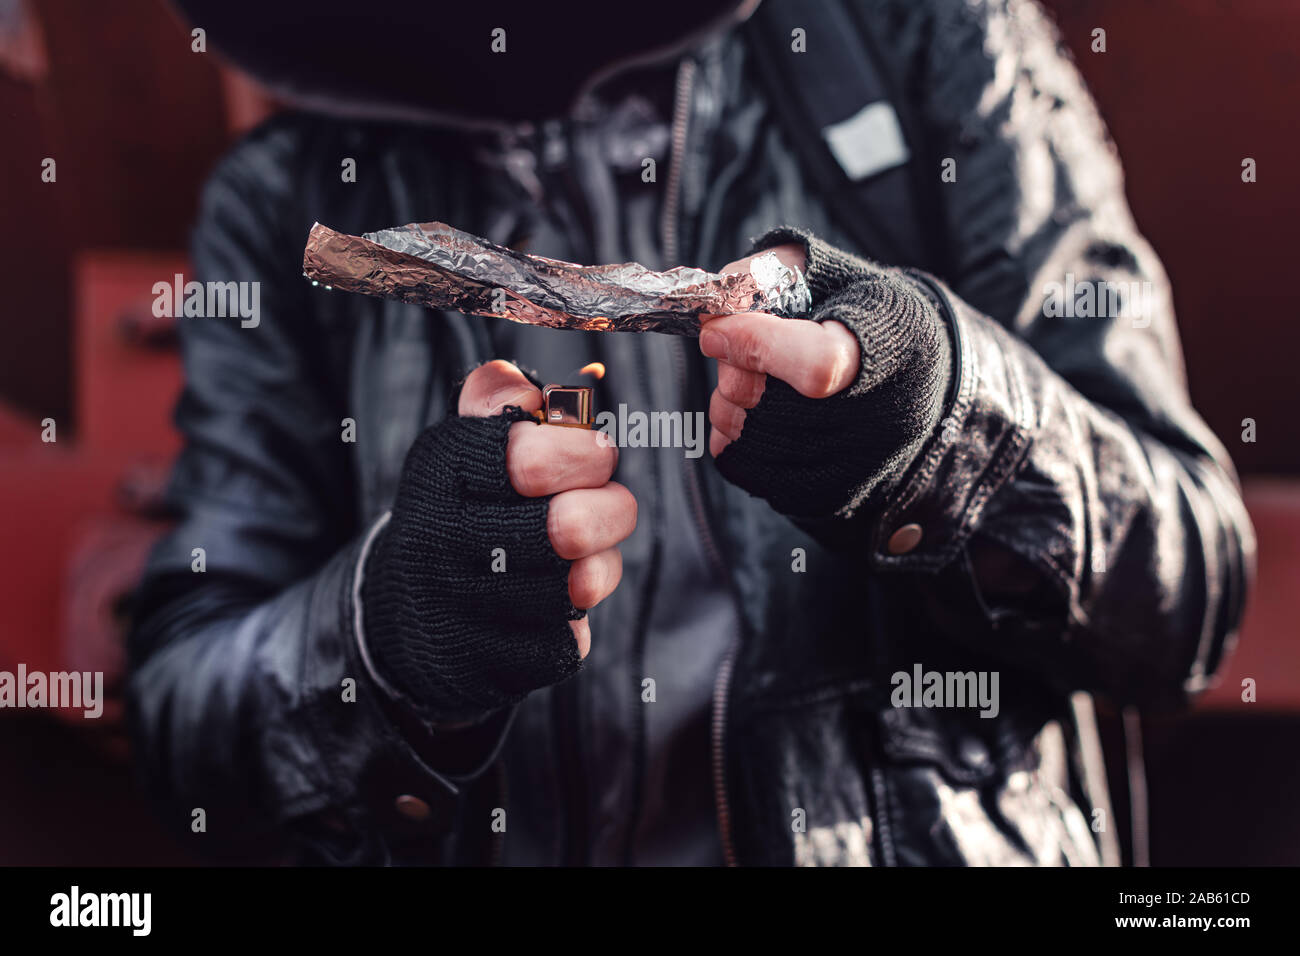 Toxicomane fumeurs opium sur du papier d'aluminium, aka chasing the dragon, Close up of hands with selective focus Banque D'Images